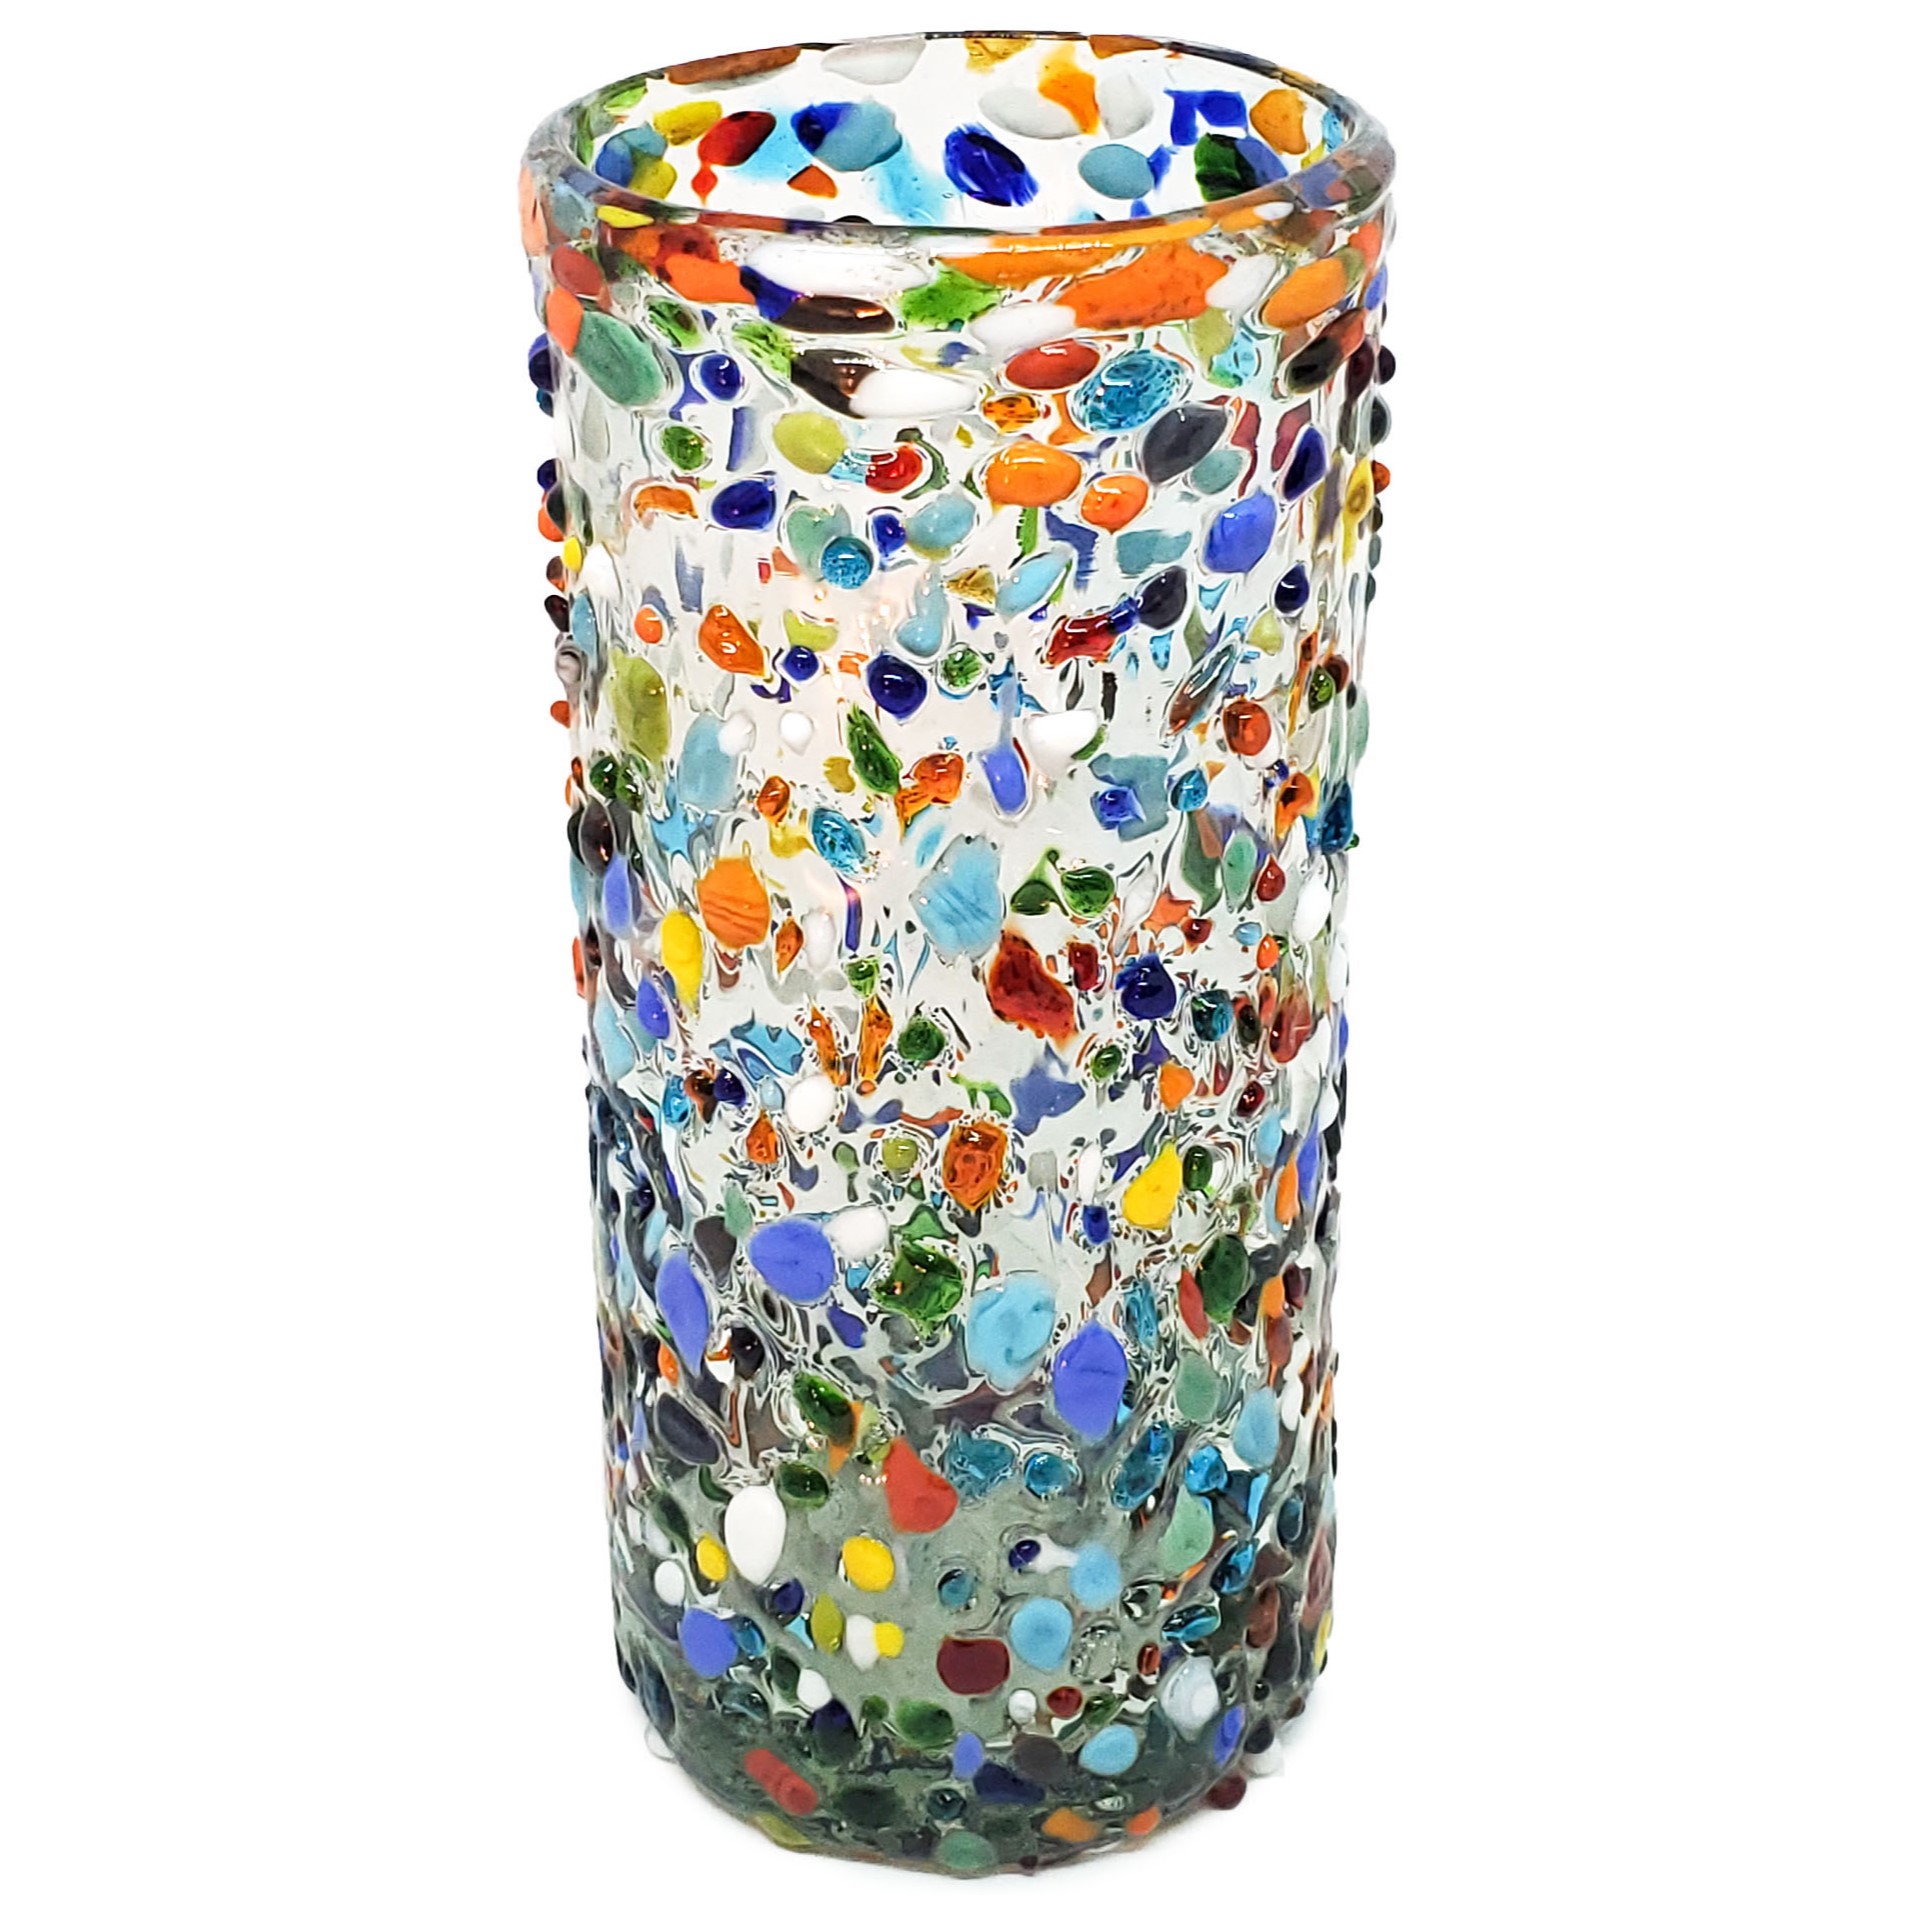 VIDRIO SOPLADO / vasos Jumbo 20oz Confeti granizado, 20 oz, Vidrio Reciclado, Libre de Plomo y Toxinas